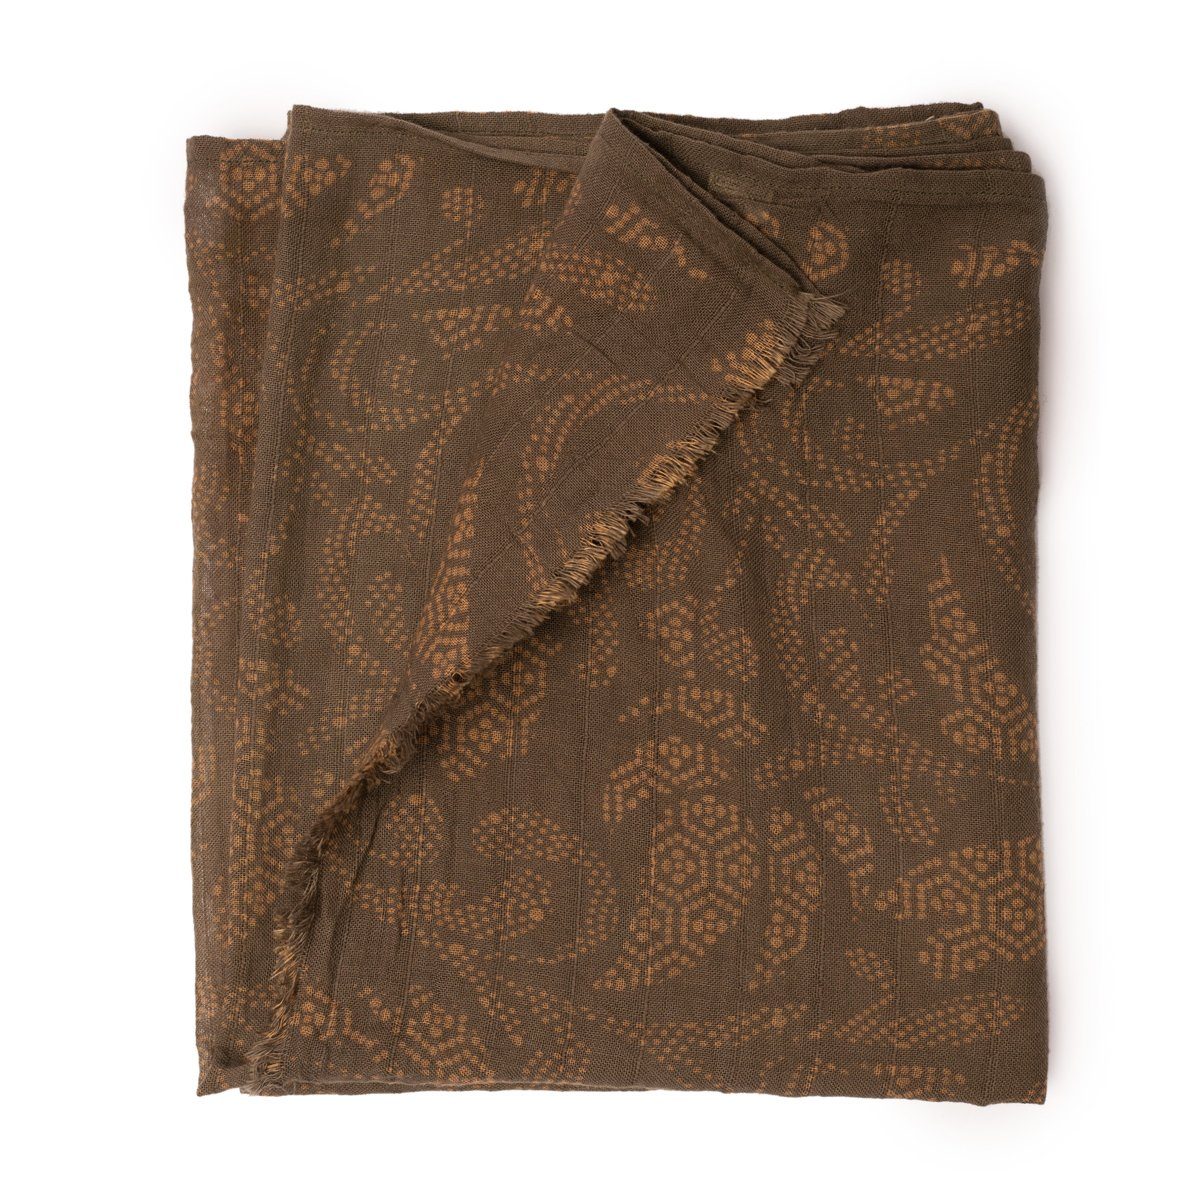 PANASIAM Halstuch elegantes Schaltuch auch als Schultertuch Schal oder Stola tragbar, in schönen farbigen Designs mit kleinen Fransen aus Baumwolle Taupe Indonesien | Halstücher